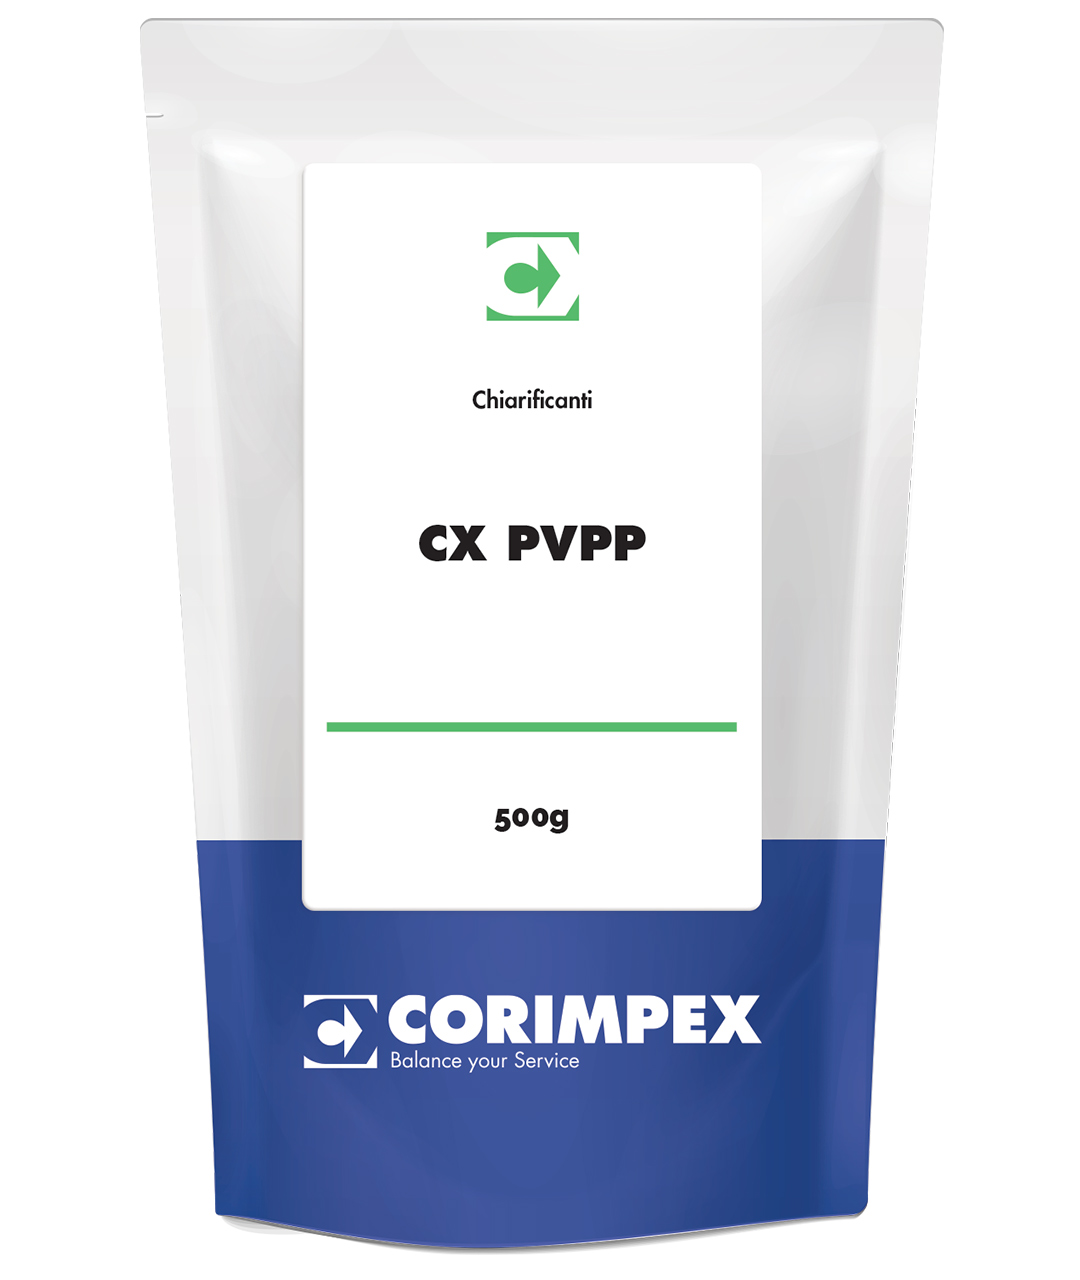 CX PVPP